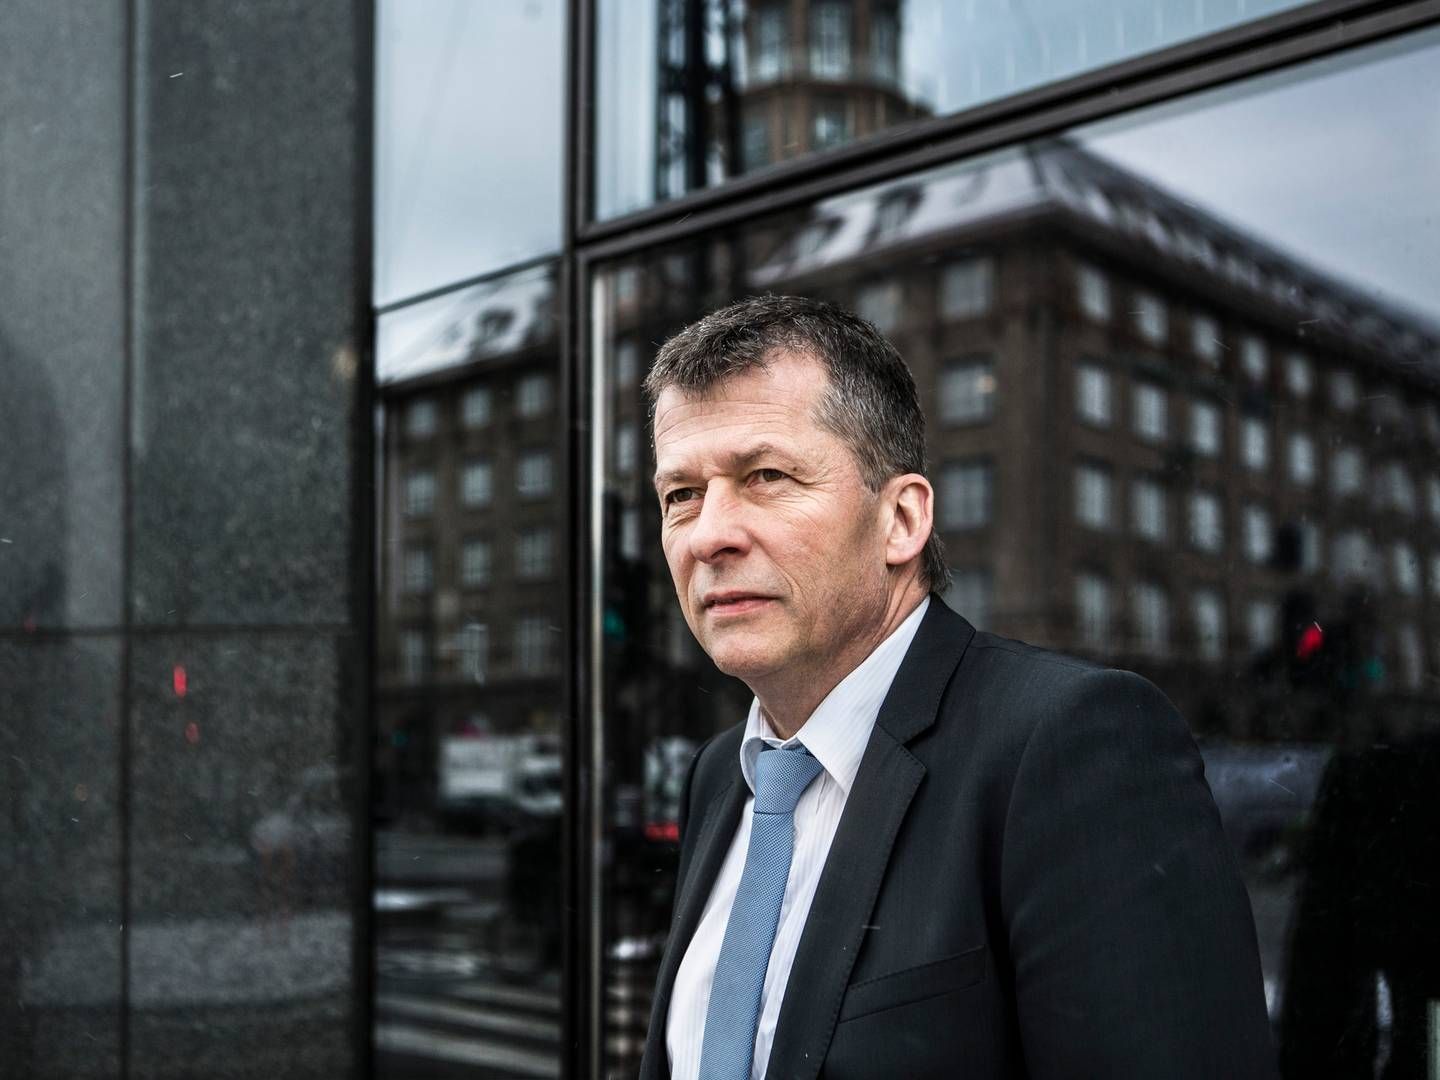 Lønstigninger til finansansatte kan betyde, at bankers priser stiger, siger Gert Jonassen, ordførende direktør i Arbejdernes Landsbank. | Foto: Arbejdernes Landsbank/pr